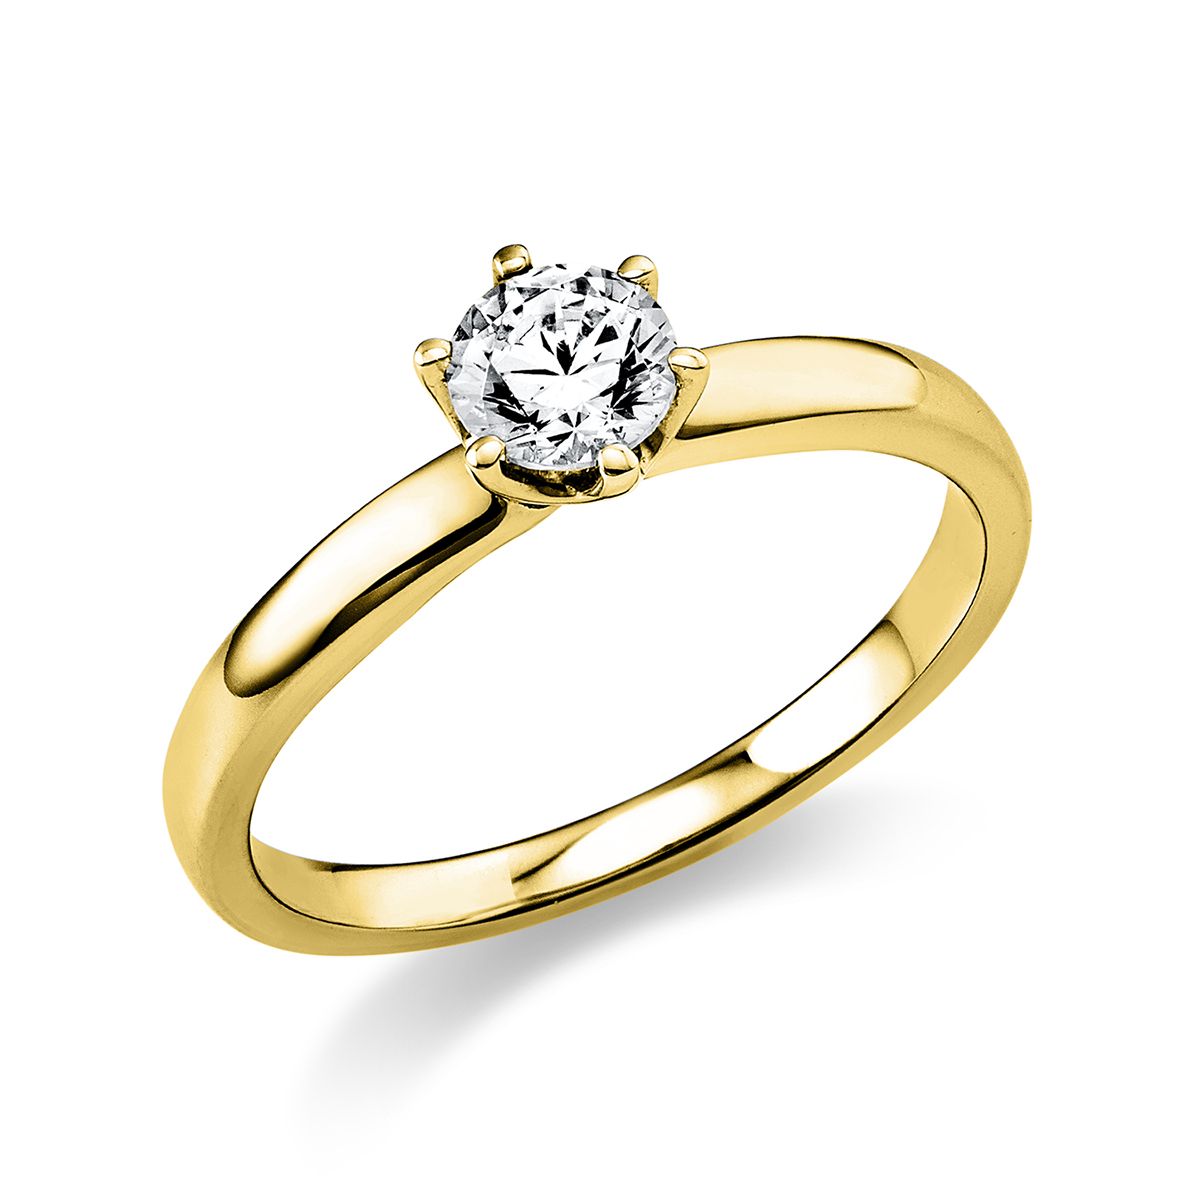 Solitär-Ring 6-Griff-Fassung 585/14K Gelbgold, Diamant 0.4 ct.